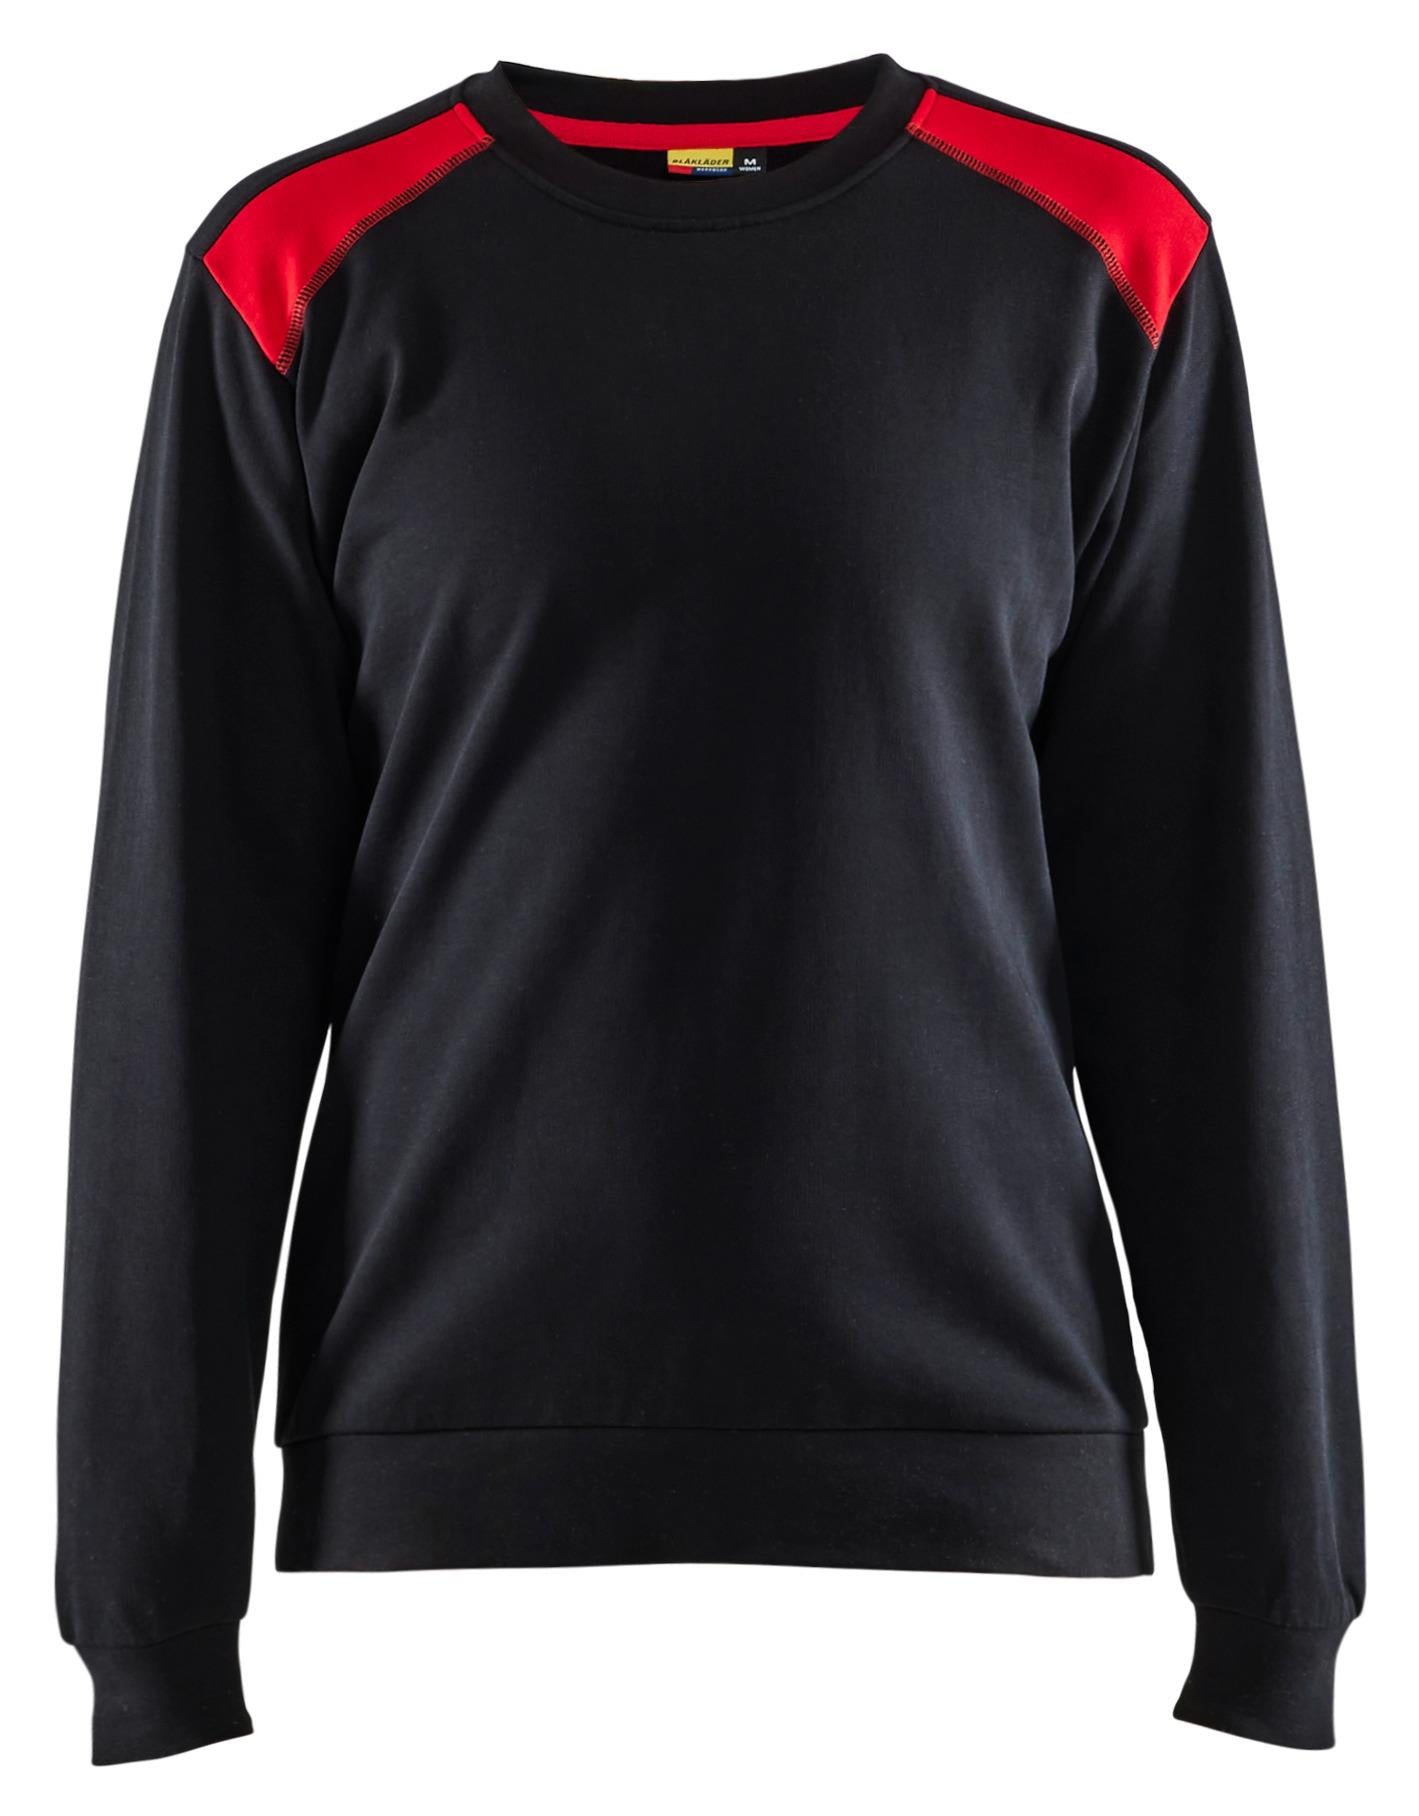 Blaklader black/red women's cotton sweatshirt #3408